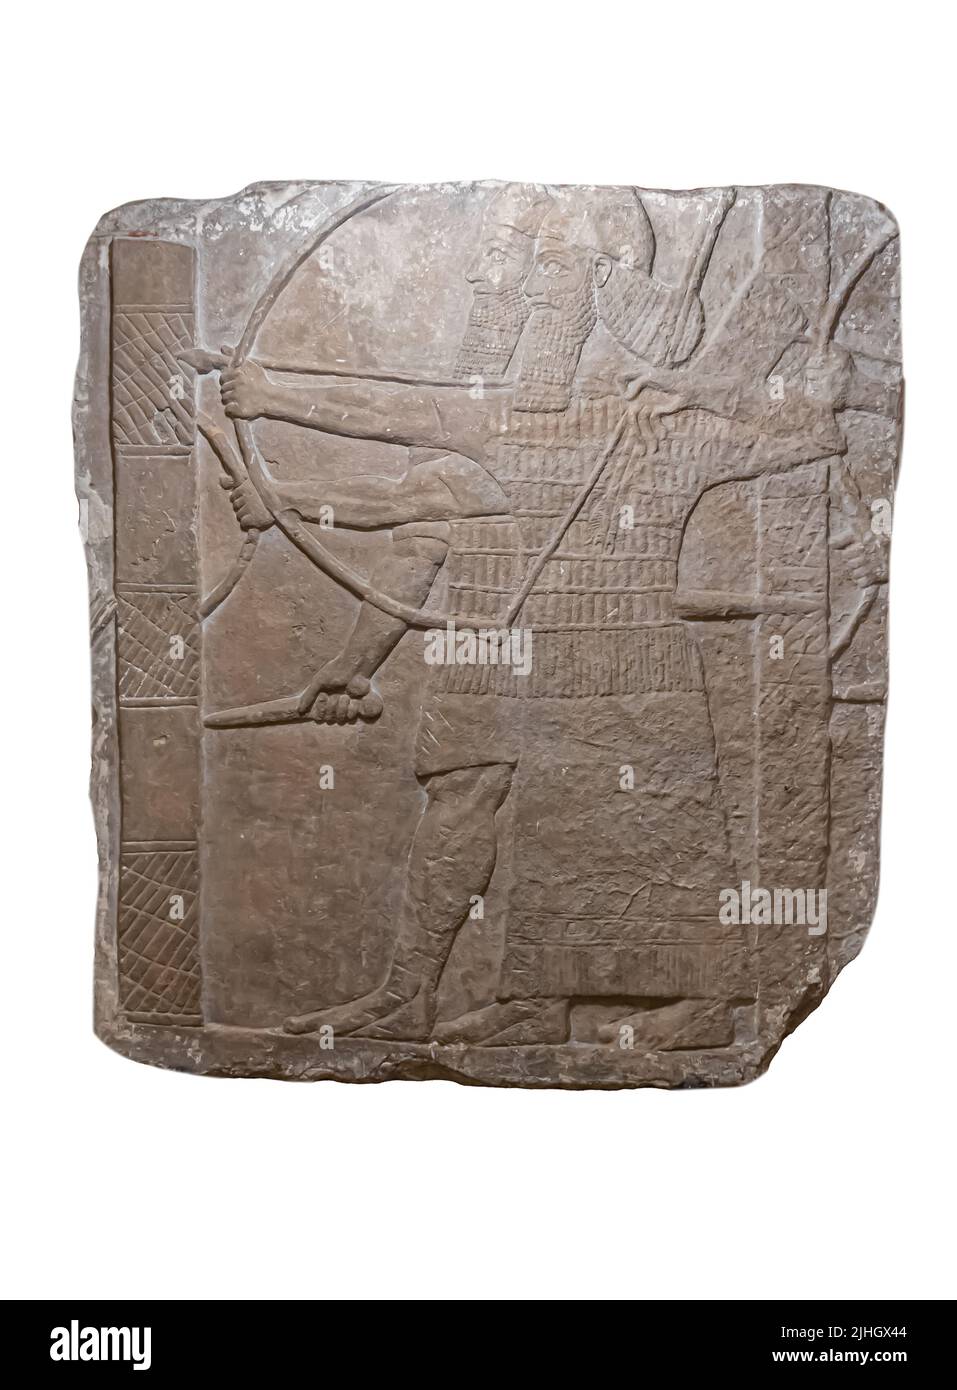 Assyrische Krieger, die eine feindliche Stadt angreifen - Detail aus einer größeren Szene - Relief aus dem Palast von Tiglath-Pileser III. In Kalhu ( Nimrud ). 8.. Jahrhundert v. Chr. Stockfoto